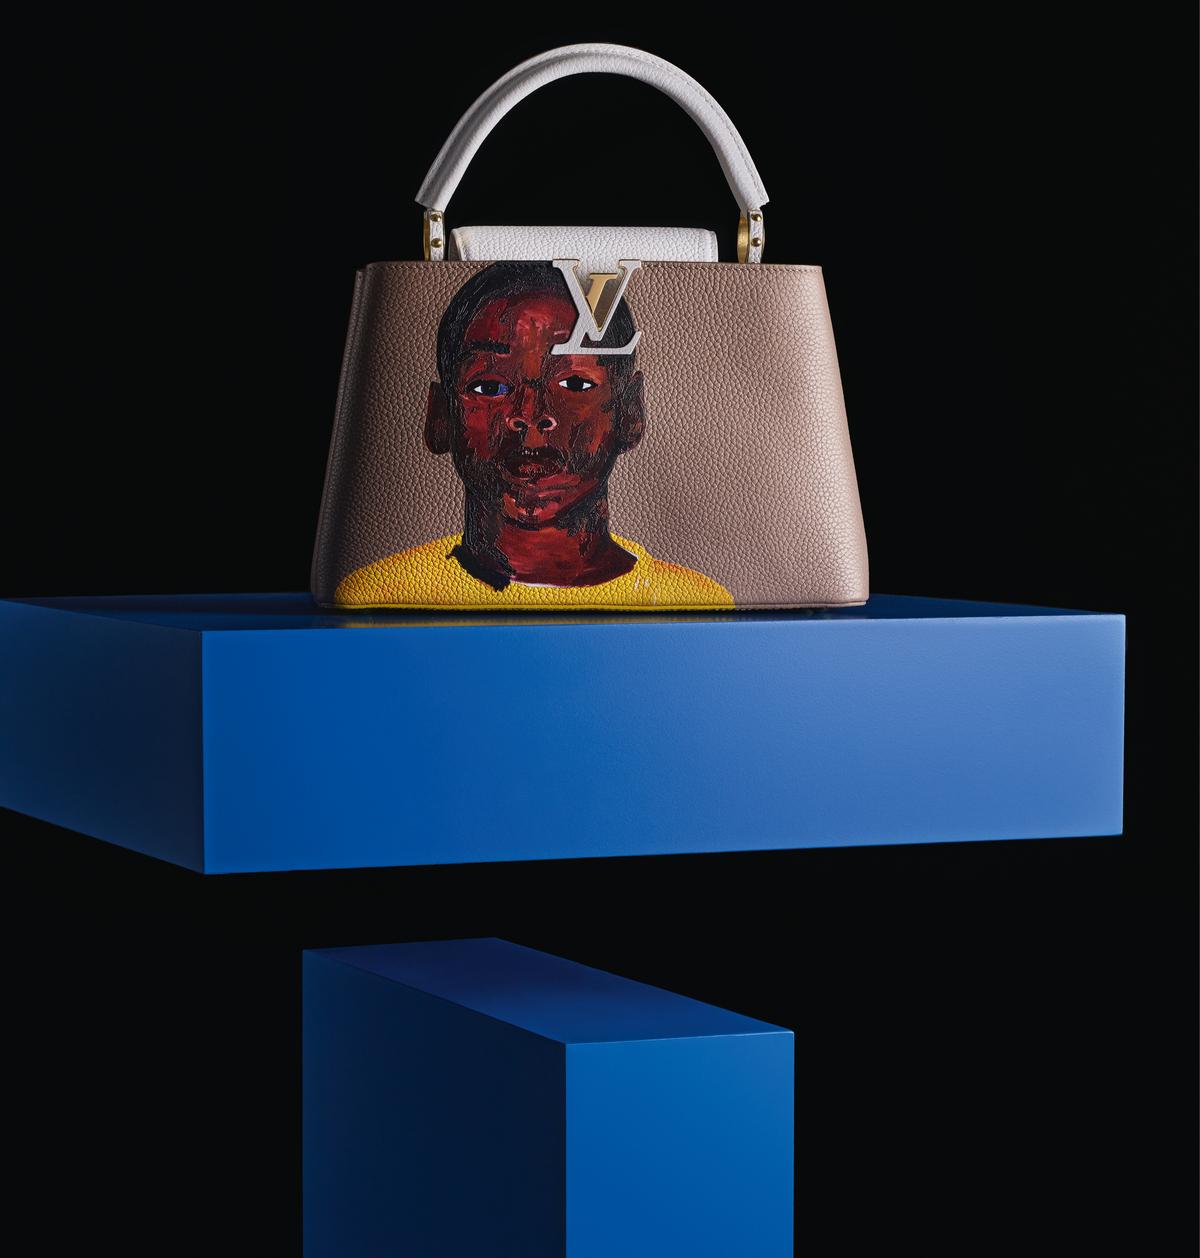 Louis Vuitton bag Capucines Pink Crocodile Leather 3D model